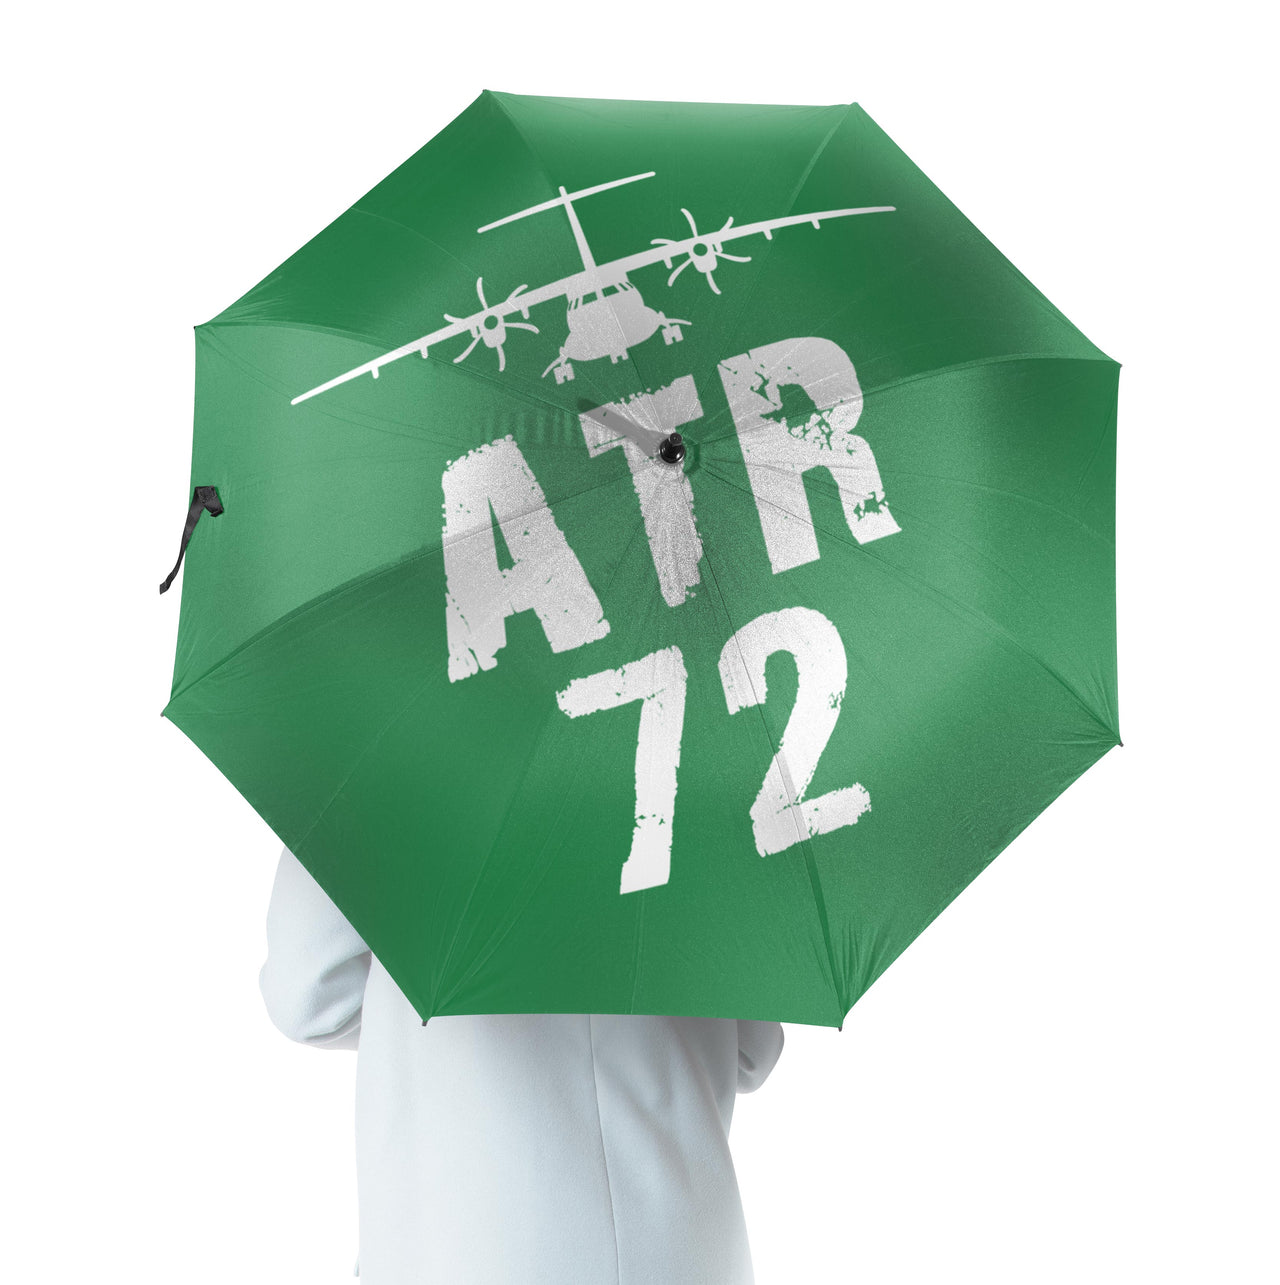 ATR-72 & Plane Designed Umbrella